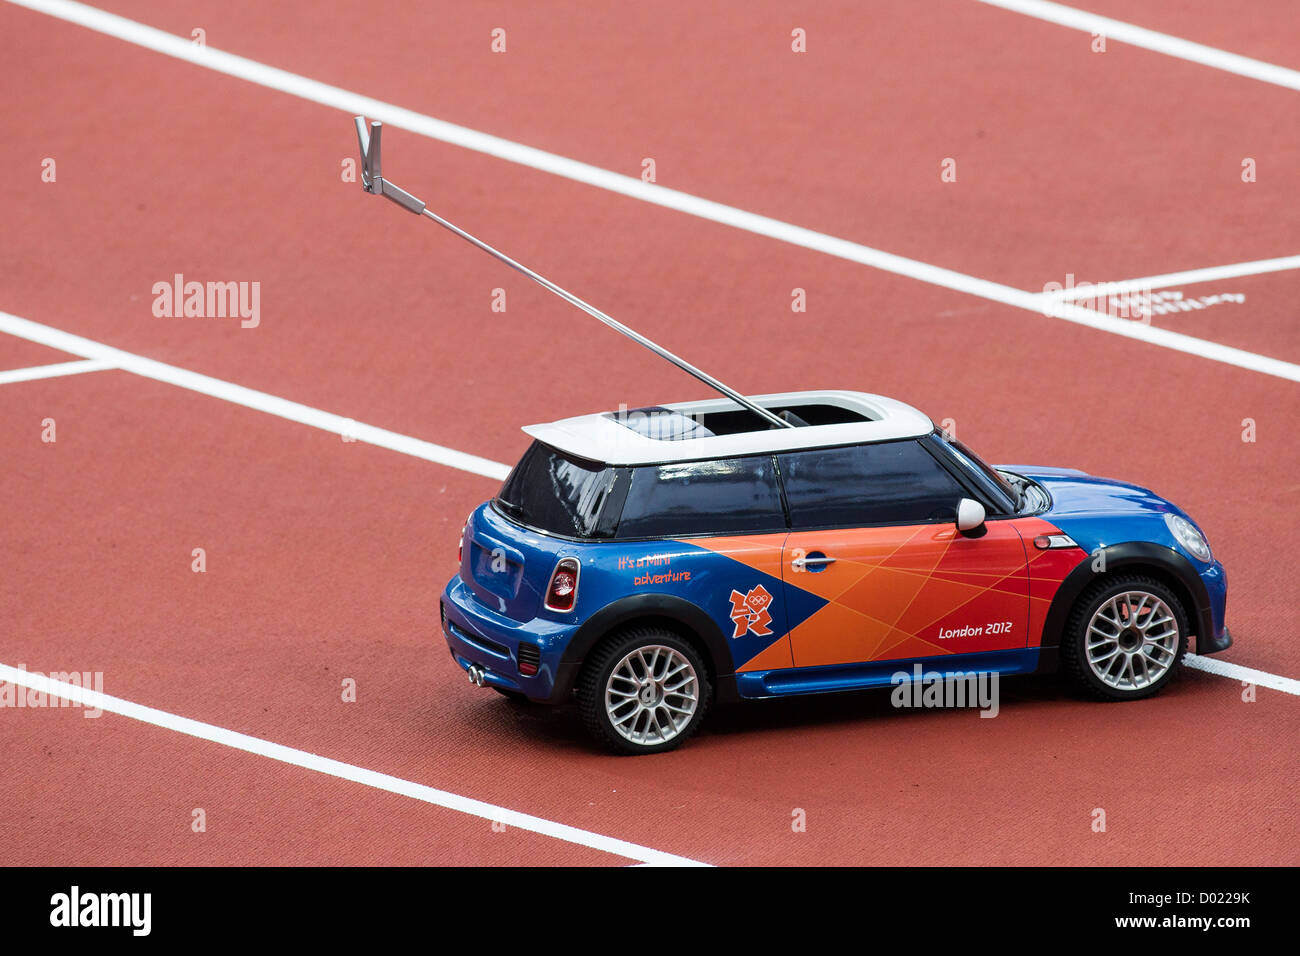 BMW MINI Voiture radio-commandé de récupération de javelot aux Jeux Olympiques d'été, Londres 2012 Banque D'Images